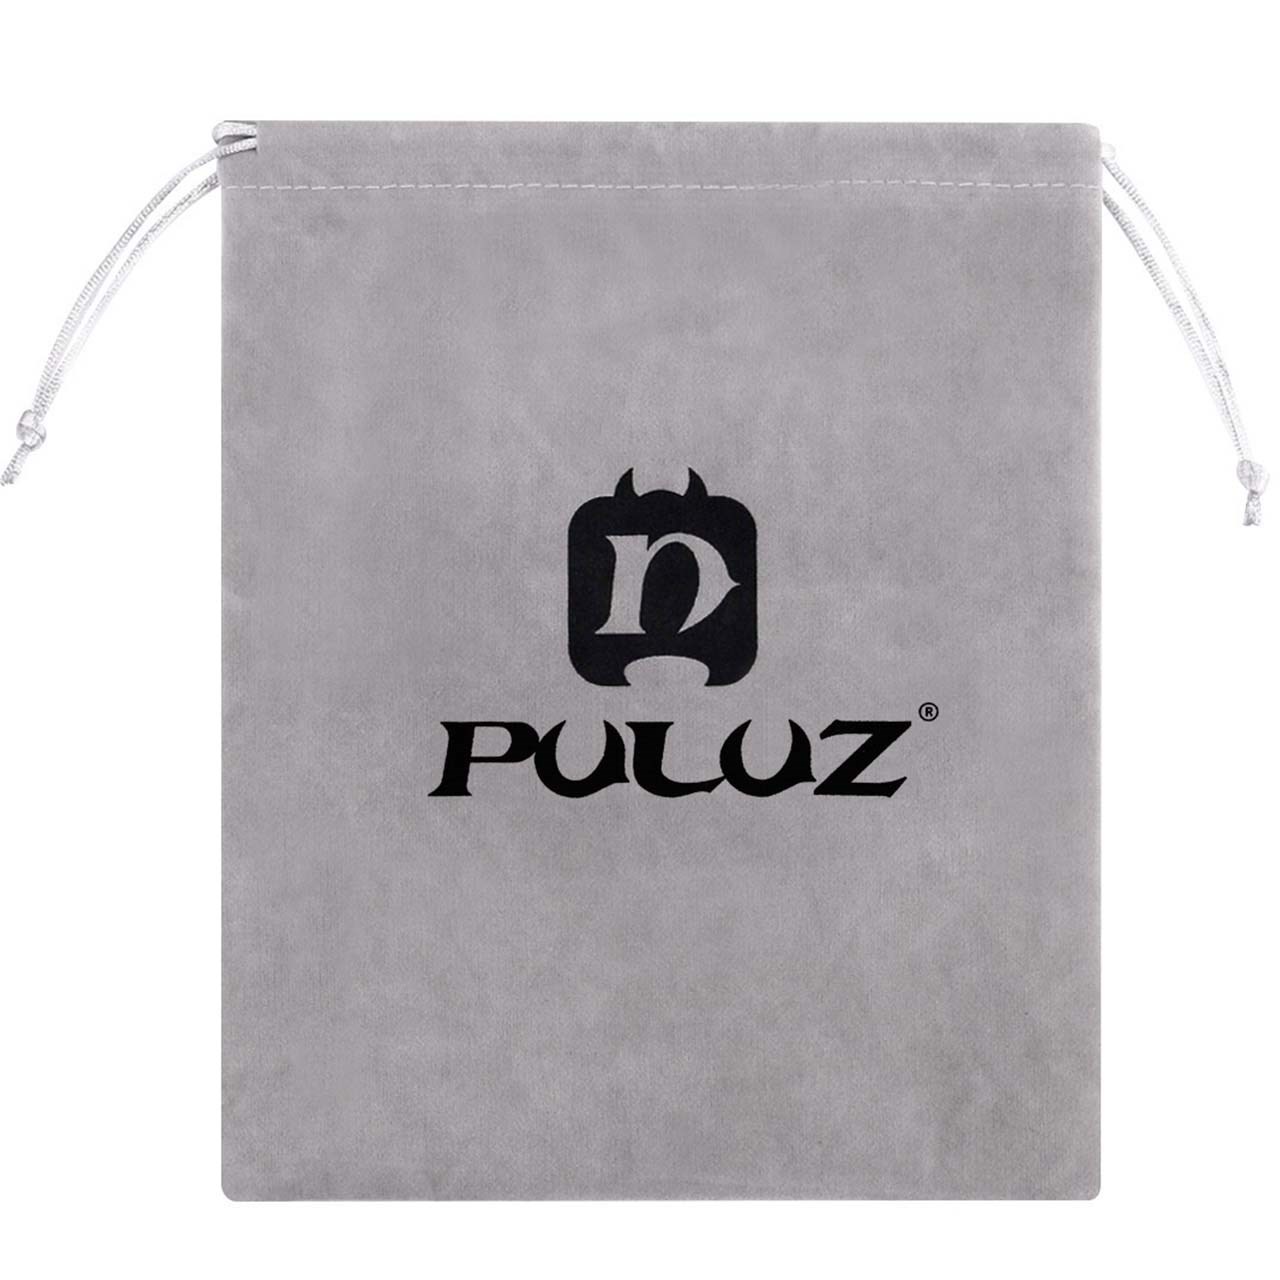 کیف لوازم پلوز مدل PU52 مناسب برای دوربین ورزشی گوپرو